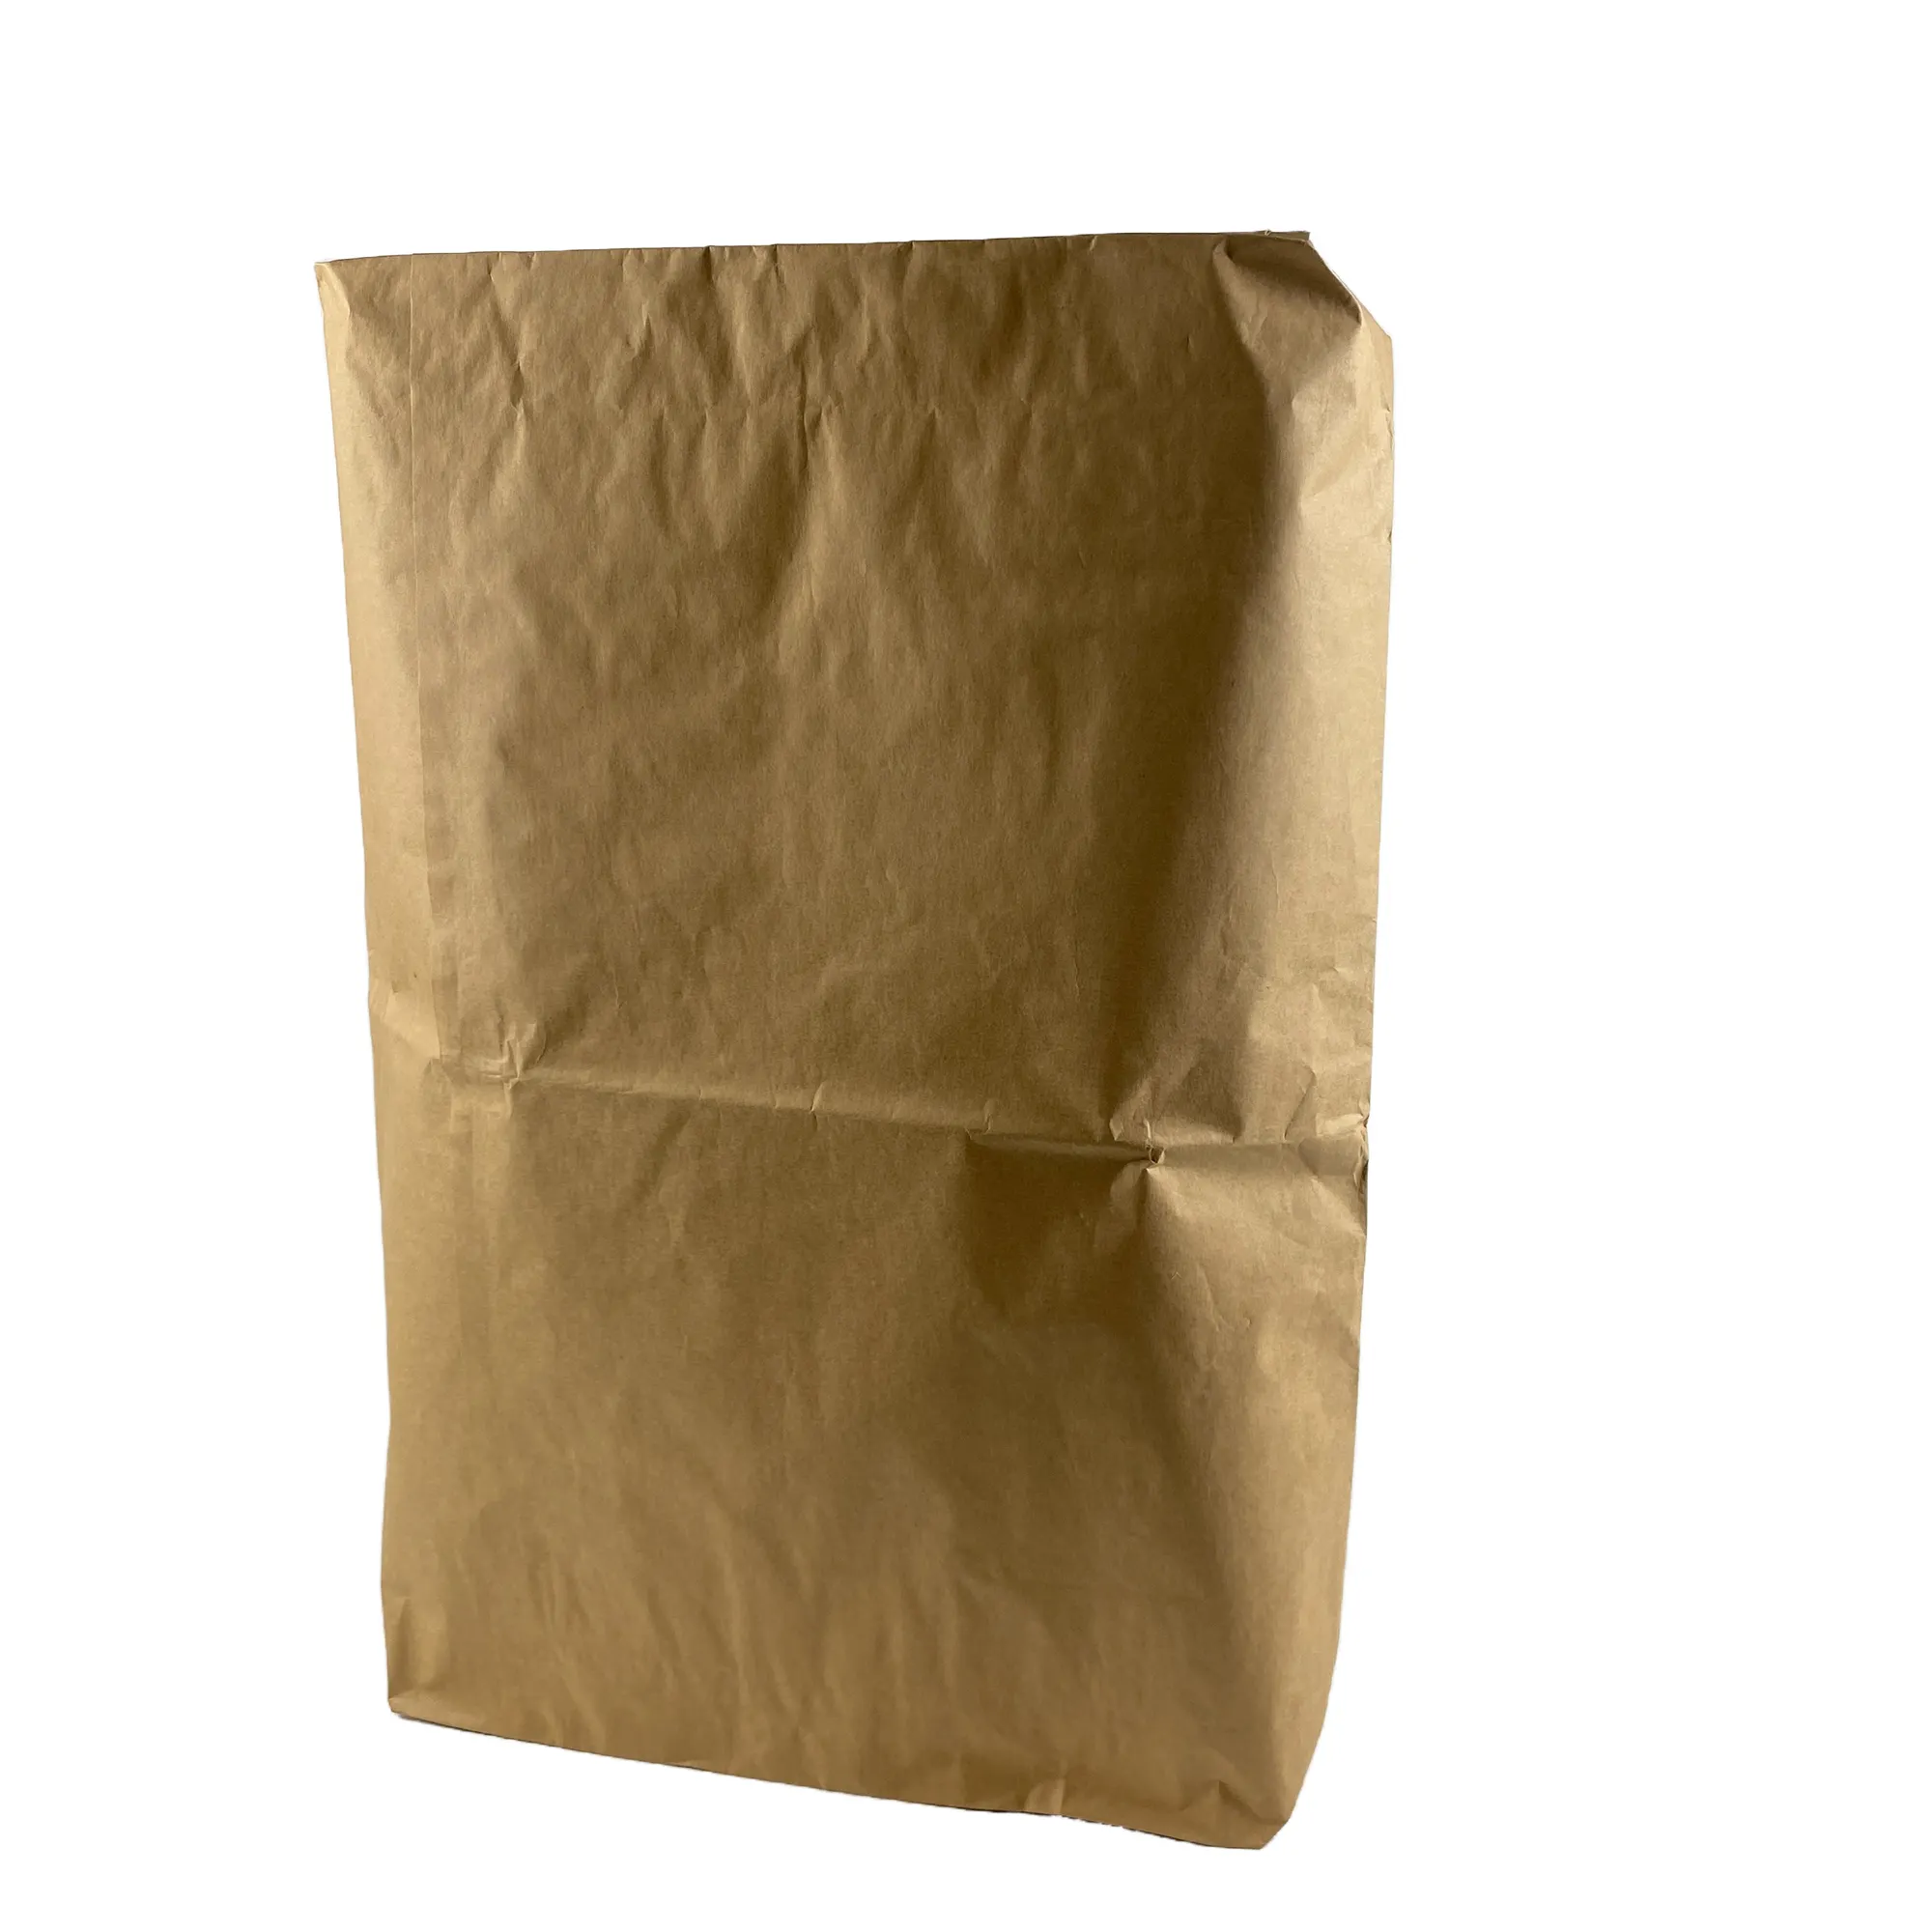 Saco de papel Kraft marrom biodegradável multicamadas de 50kg preço barato para cimento com tampa de válvula